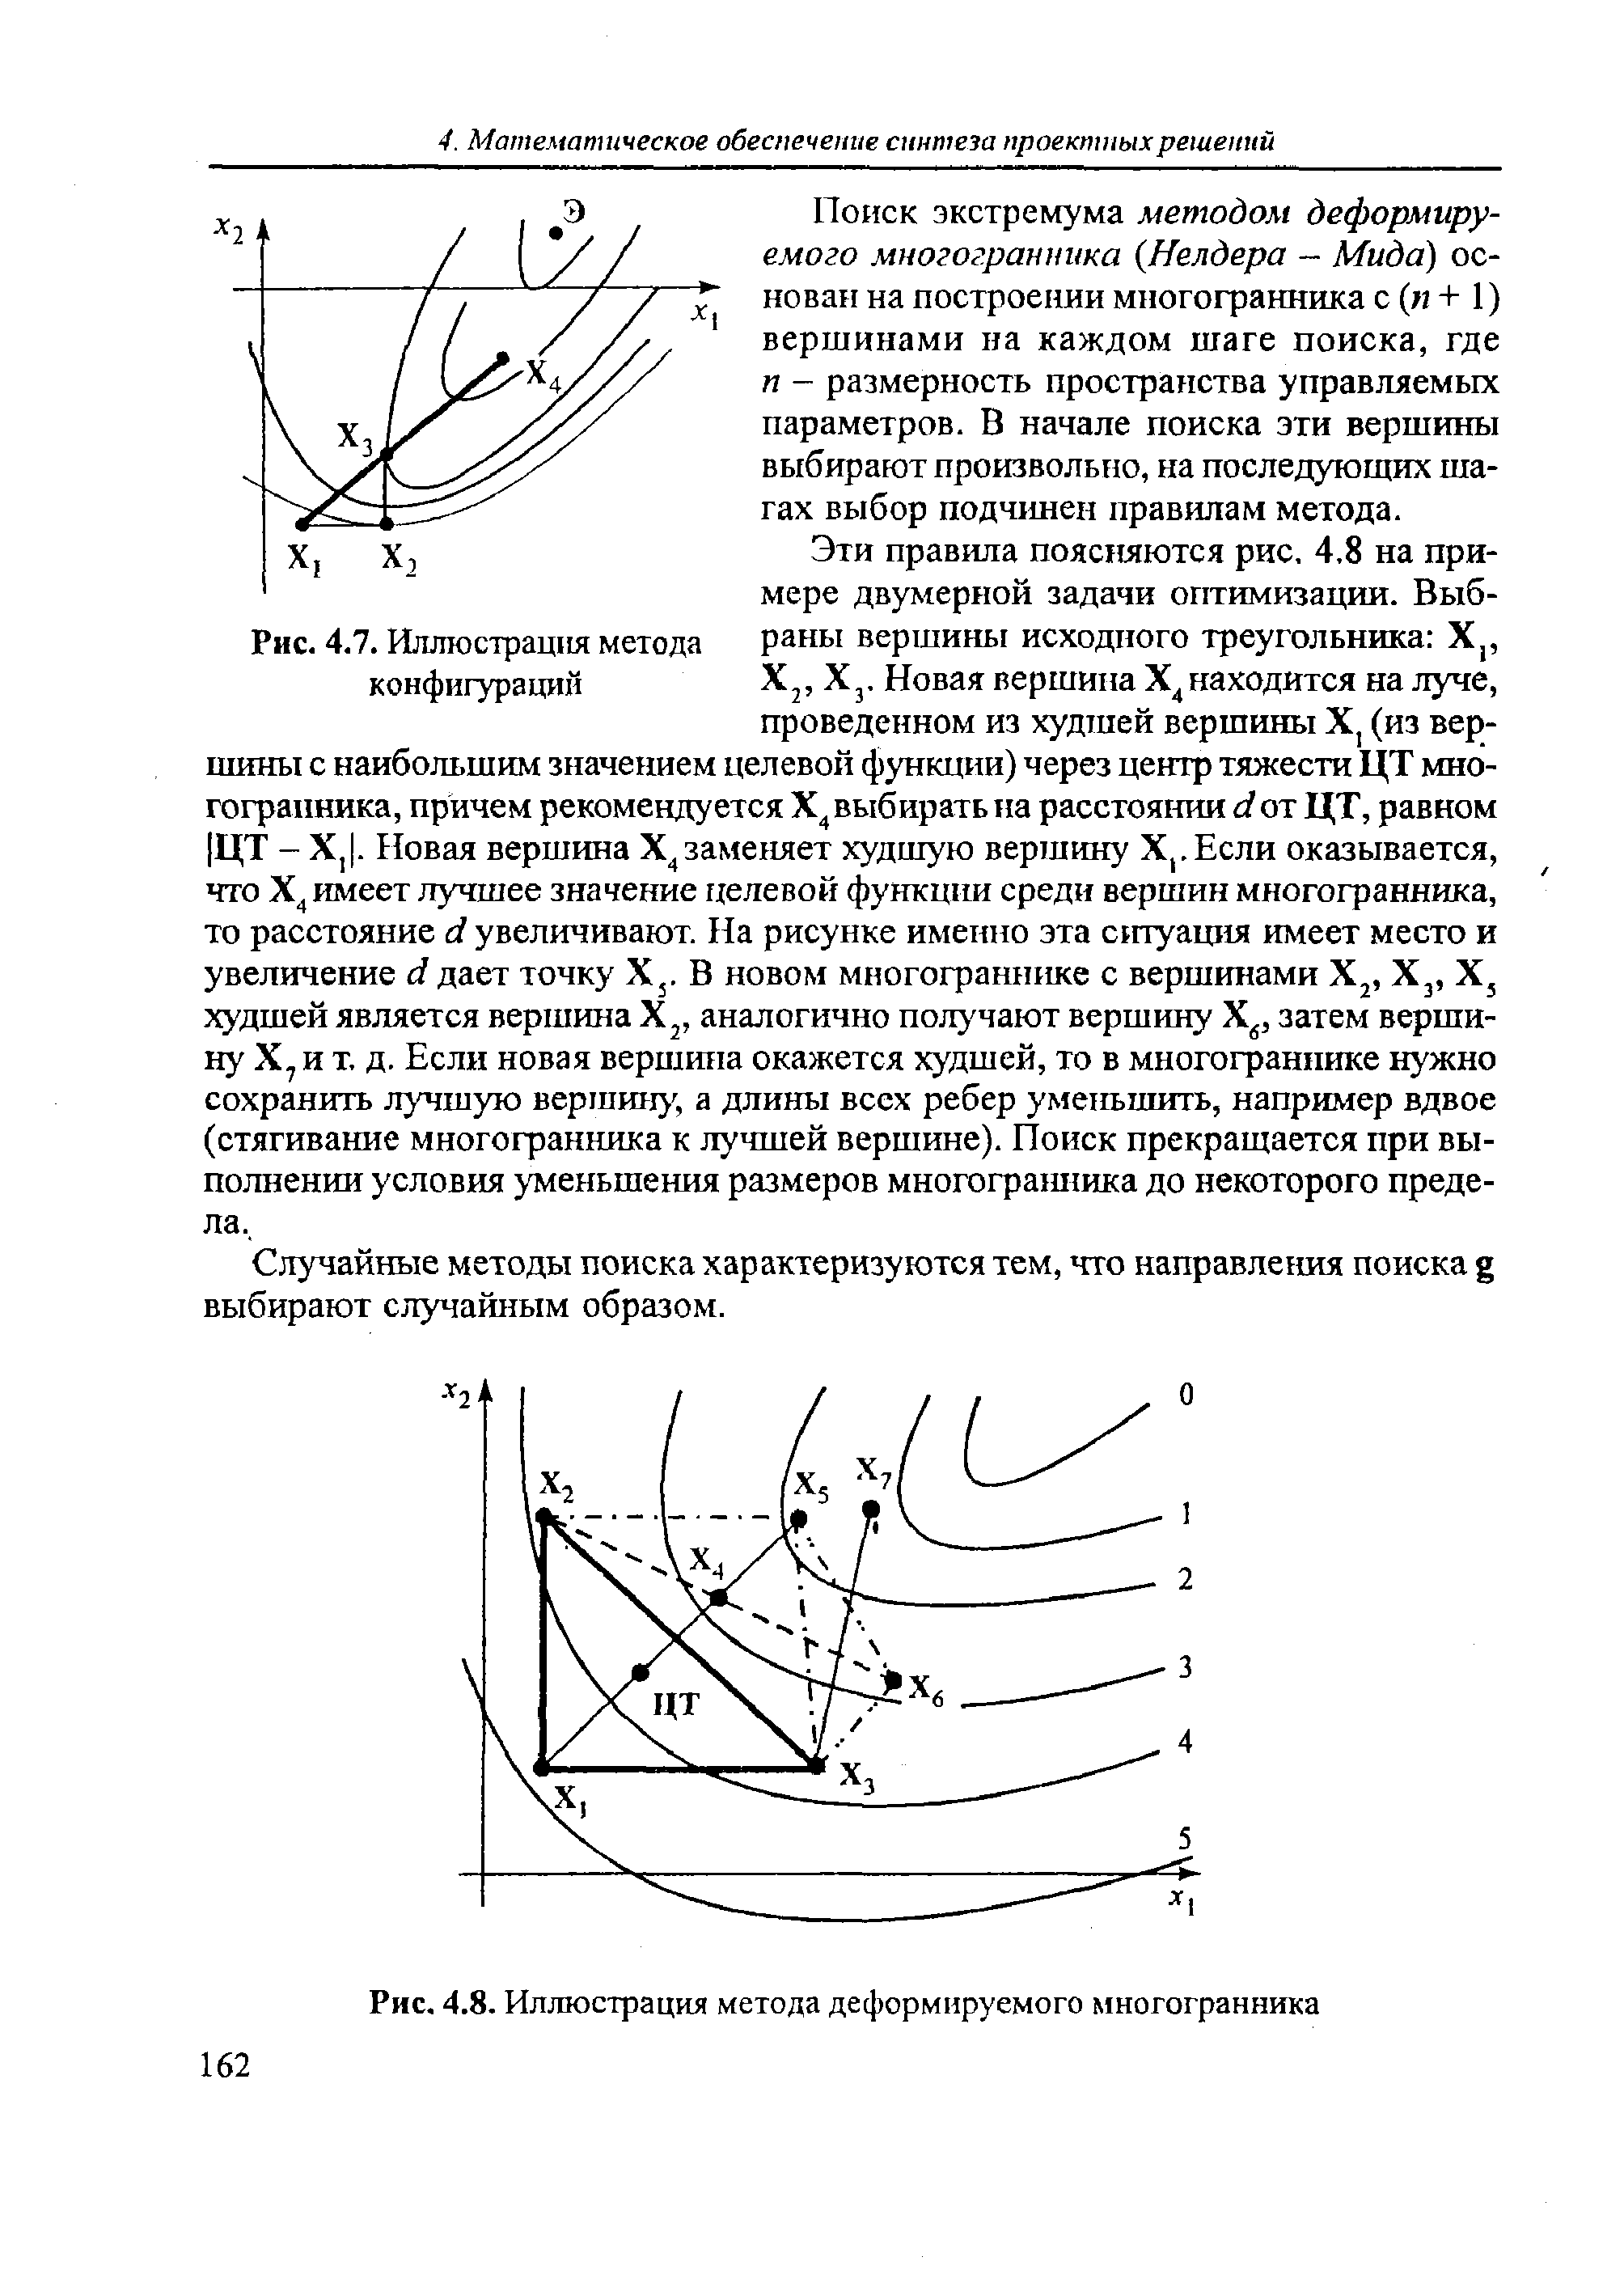 Рис. 4.7. Иллюстрация метода конфигураций
